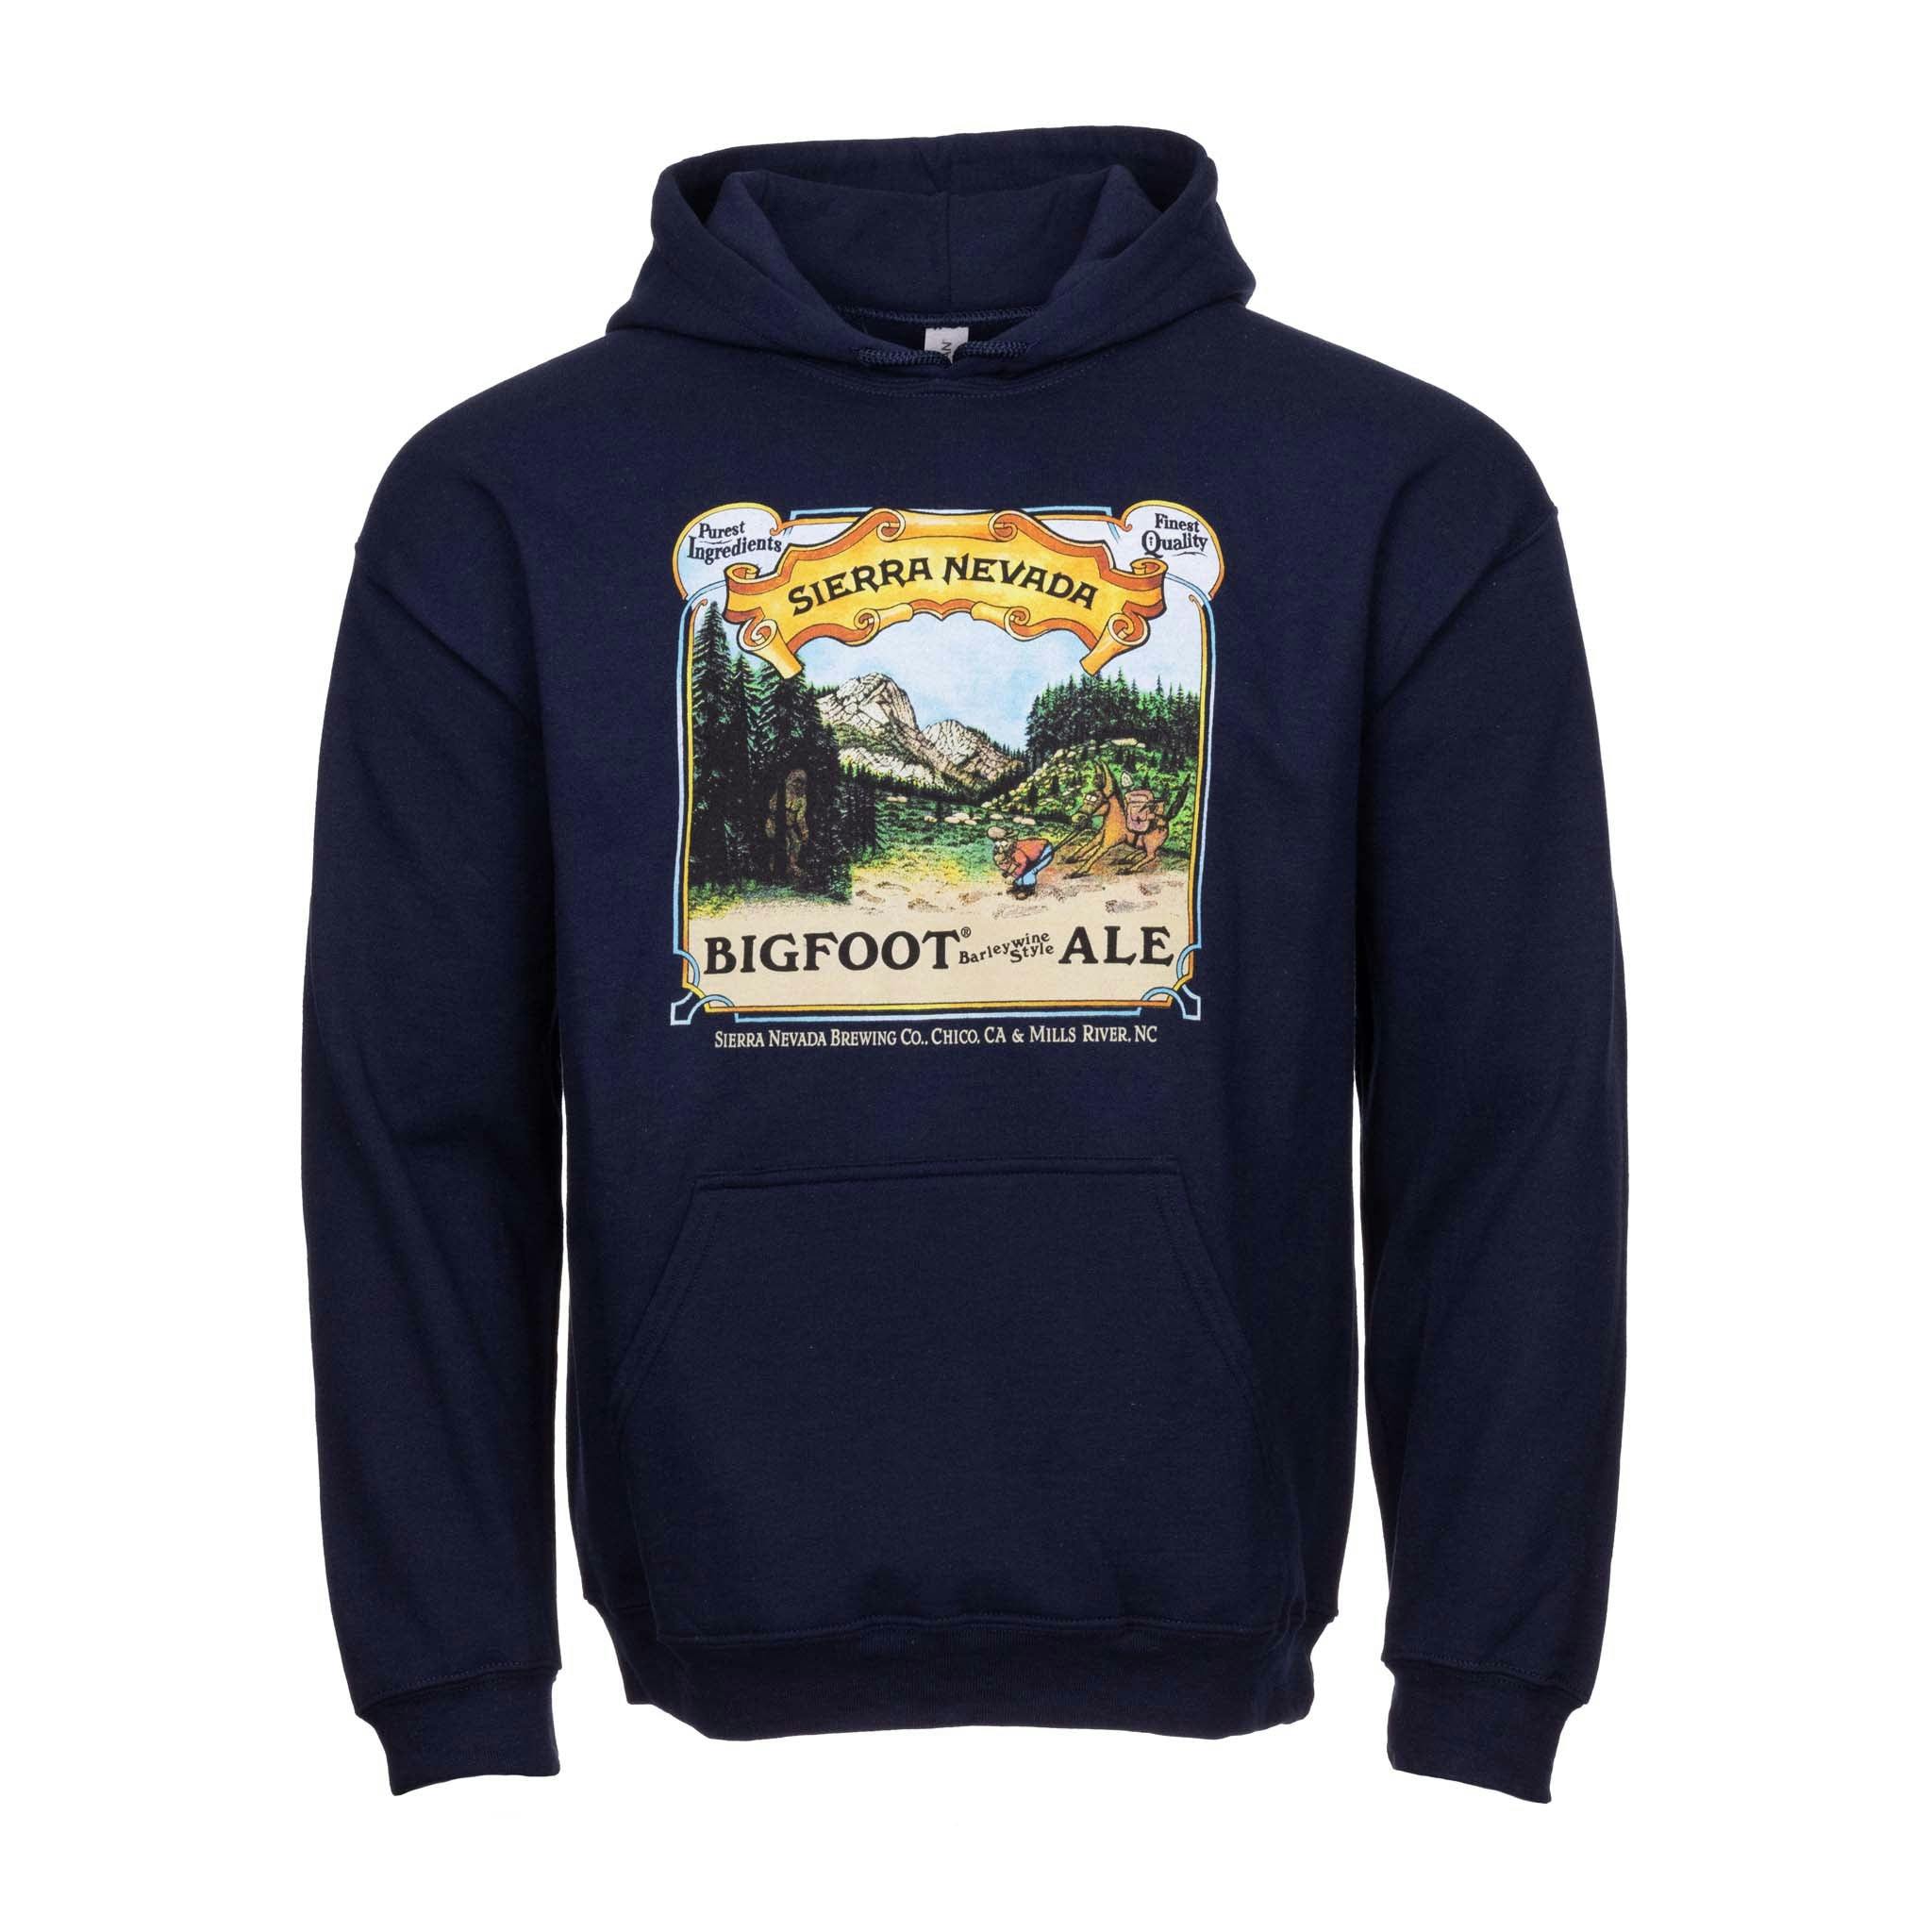 Bigfoot Hooded Sweatshirt - front view